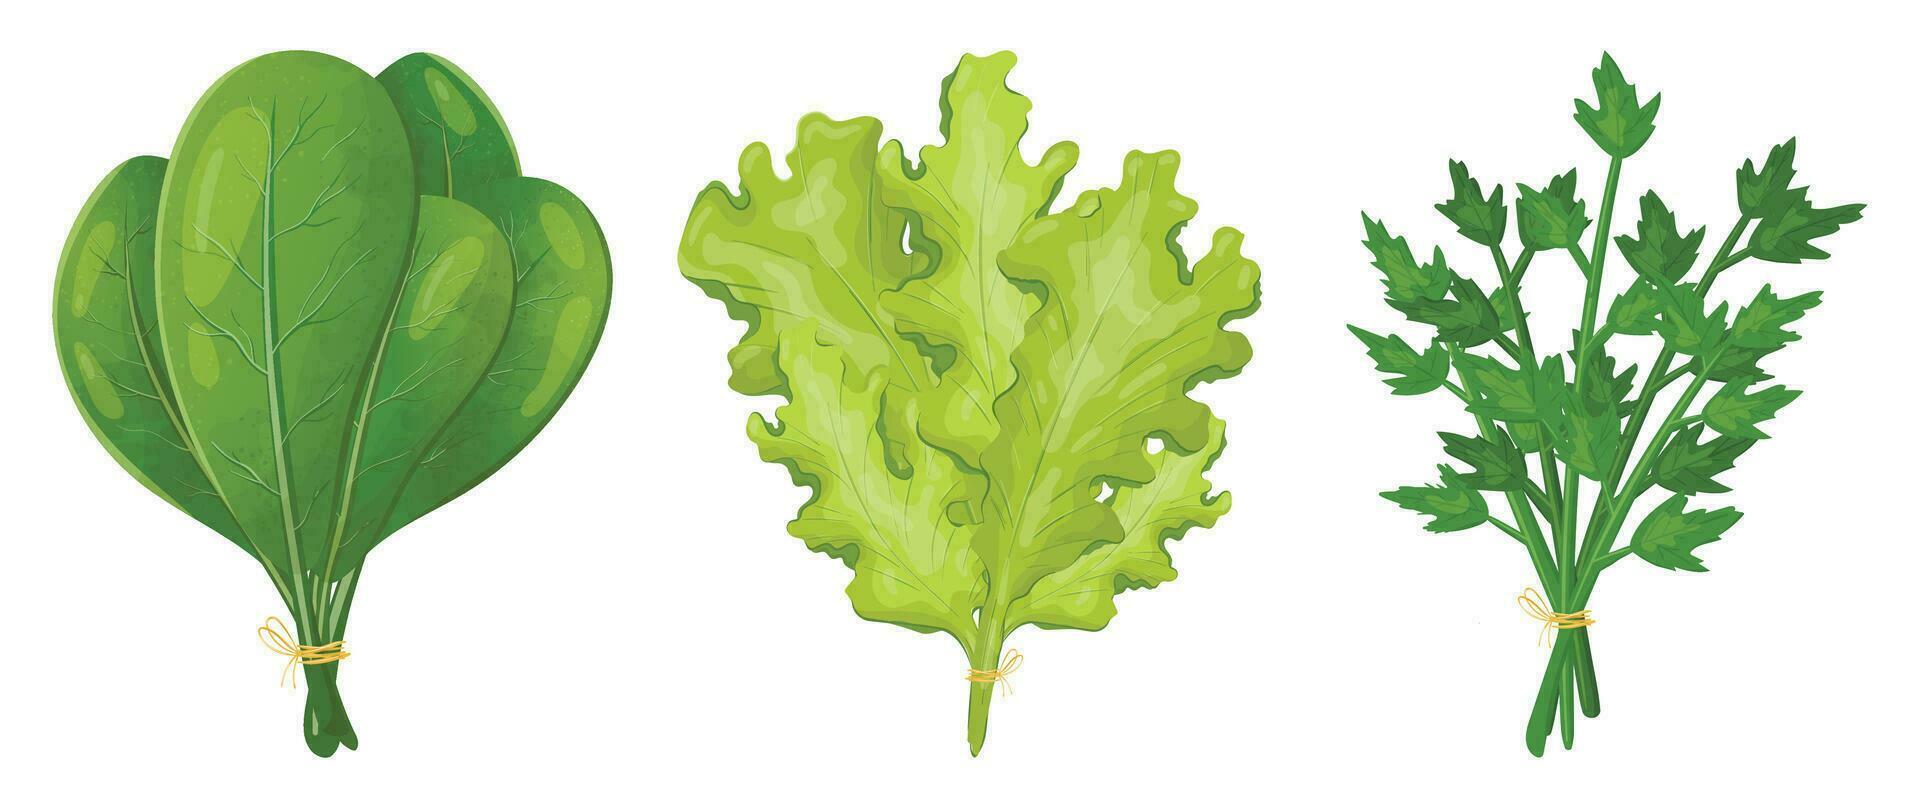 impostato di vettore realistico immagini di gruppi di verdura per insalata. spinaci, lattuga e prezzemolo le foglie. naturale erbe aromatiche come decorazione elementi o cibo stagionatura.